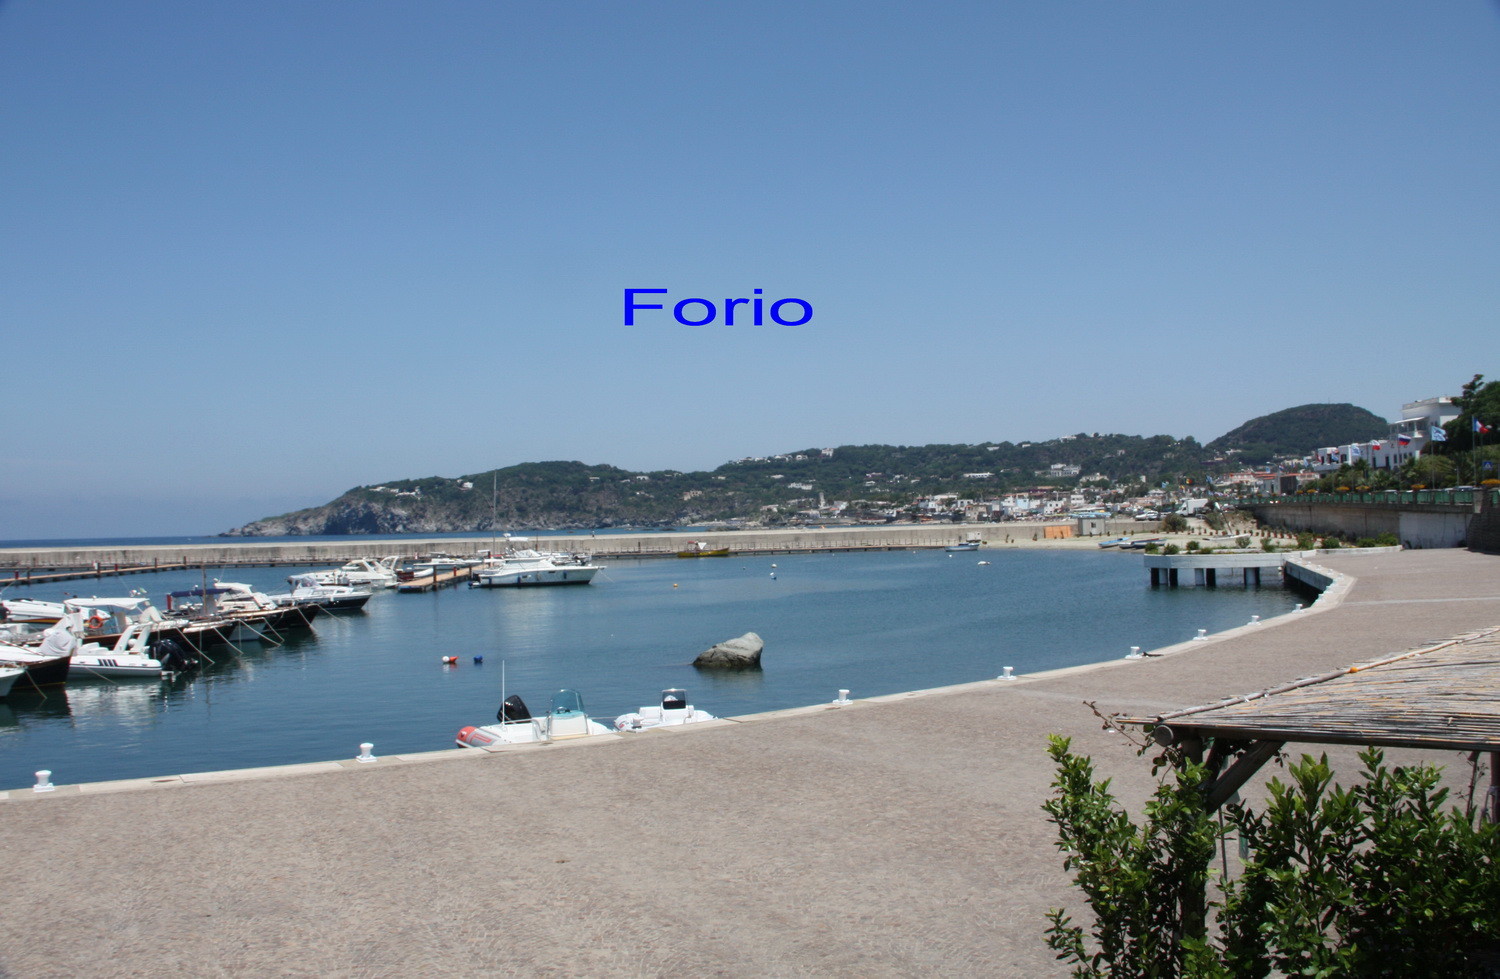 Hafen Forio auf Ischia